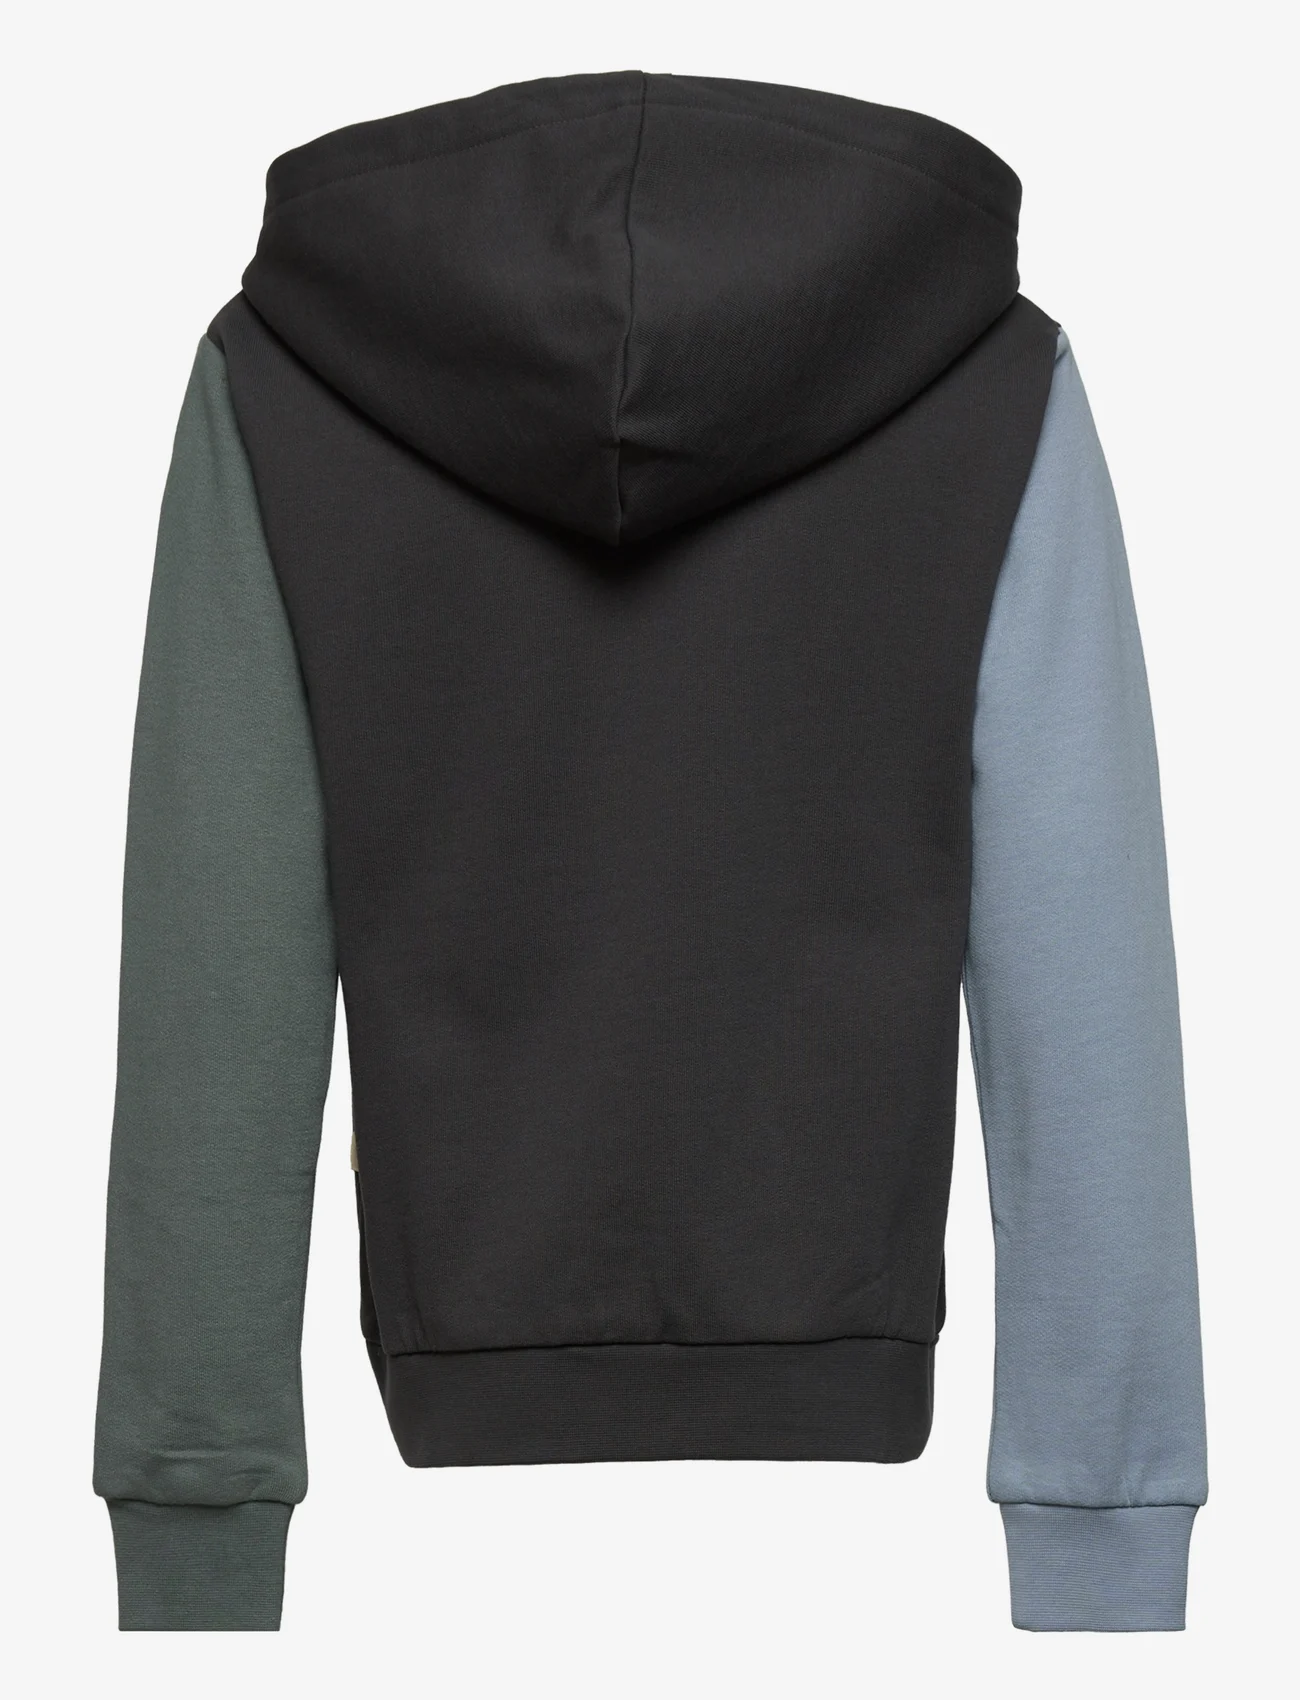 Soft Gallery - SGBowie Block Sweatshirt - sweatshirts & hoodies - balsam green - 1